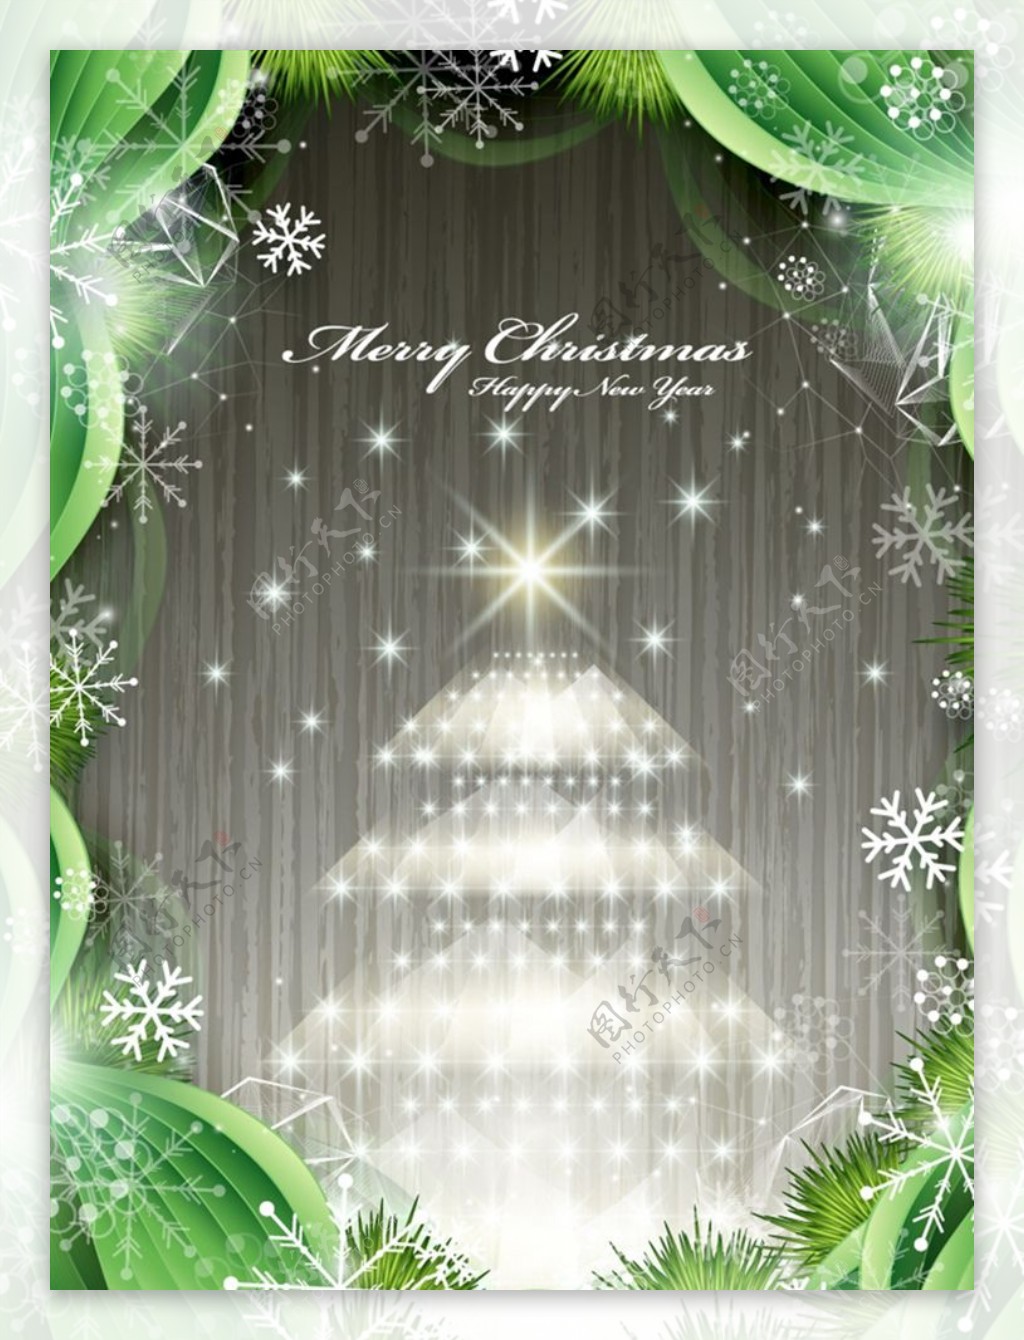 银色圣诞树图片